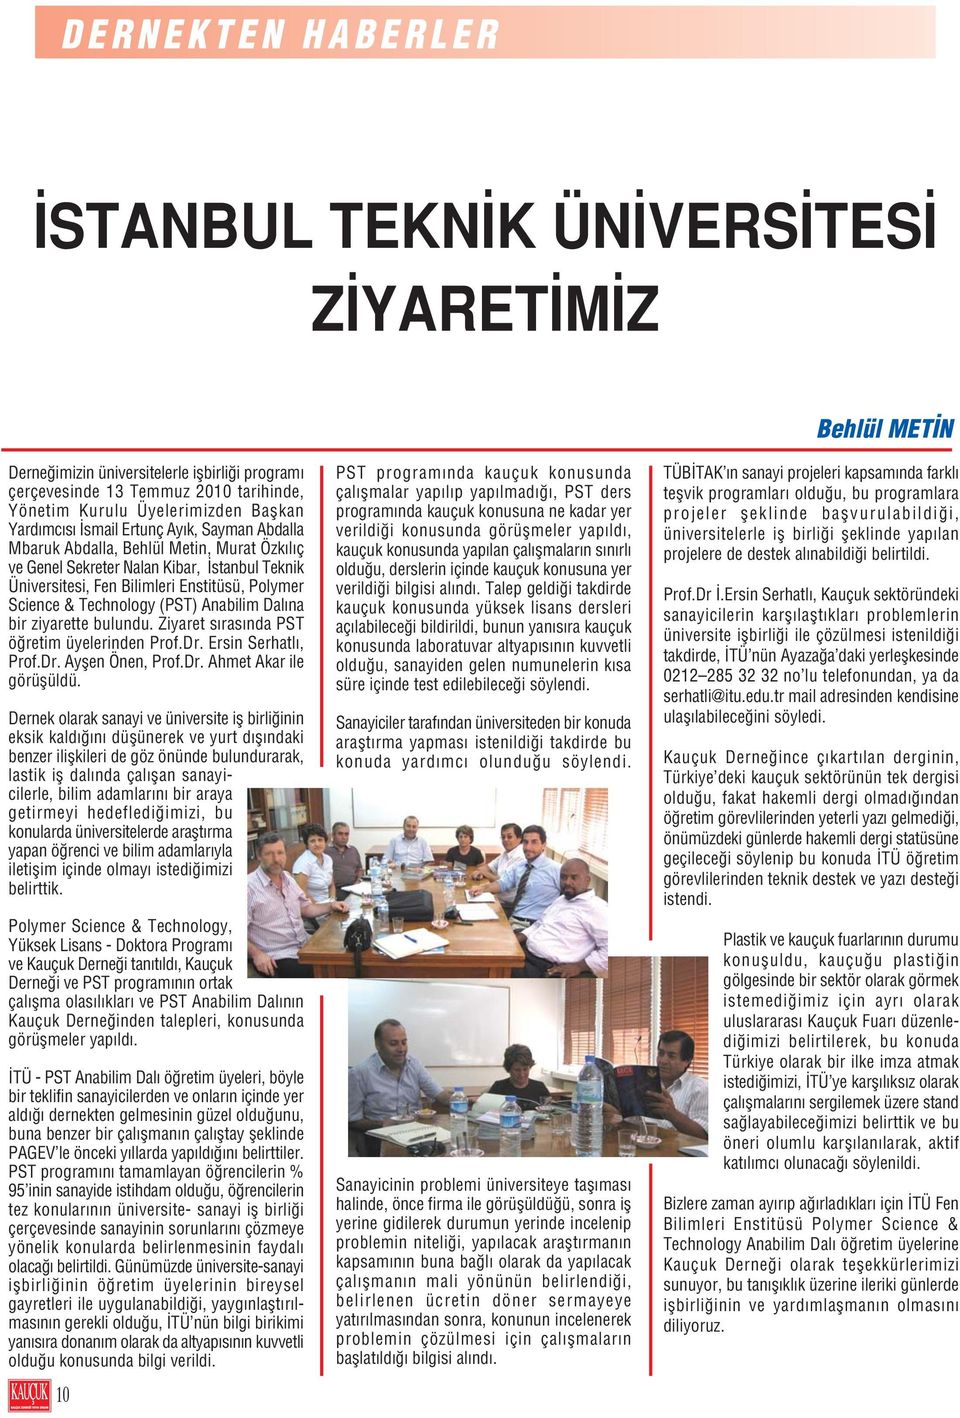 (PST) Anabilim Dal na bir ziyarette bulundu. Ziyaret s ras nda PST ö retim üyelerinden Prof.Dr. Ersin Serhatl, Prof.Dr. Ayflen Önen, Prof.Dr. Ahmet Akar ile görüflüldü.